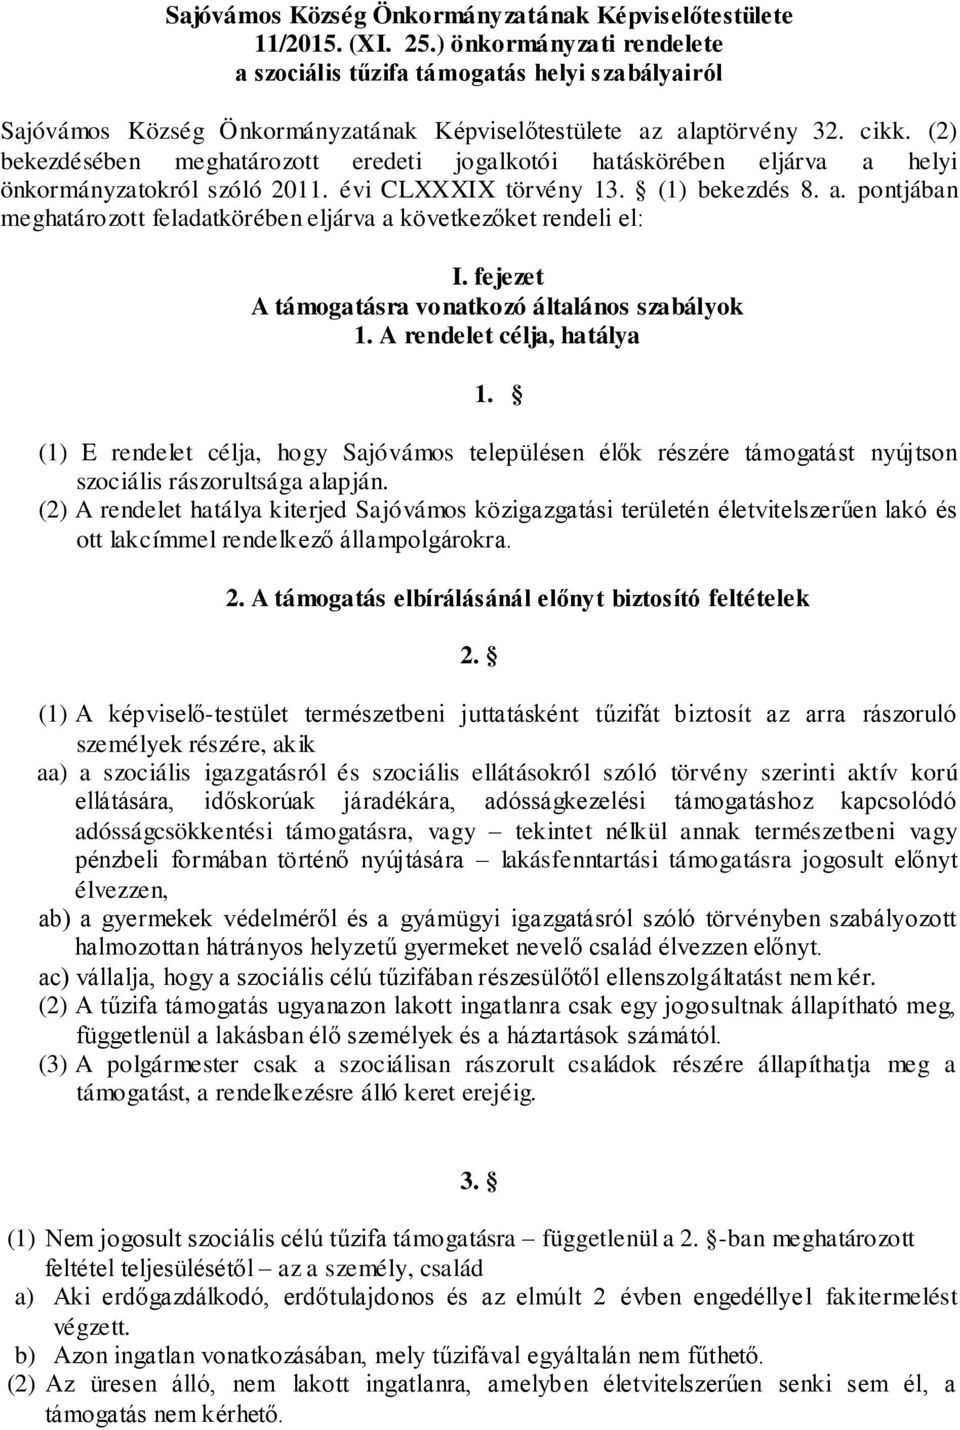 (2) bekezdésében meghatározott eredeti jogalkotói hatáskörében eljárva a helyi önkormányzatokról szóló 2011. évi CLXXXIX törvény 13. (1) bekezdés 8. a. pontjában meghatározott feladatkörében eljárva a következőket rendeli el: I.